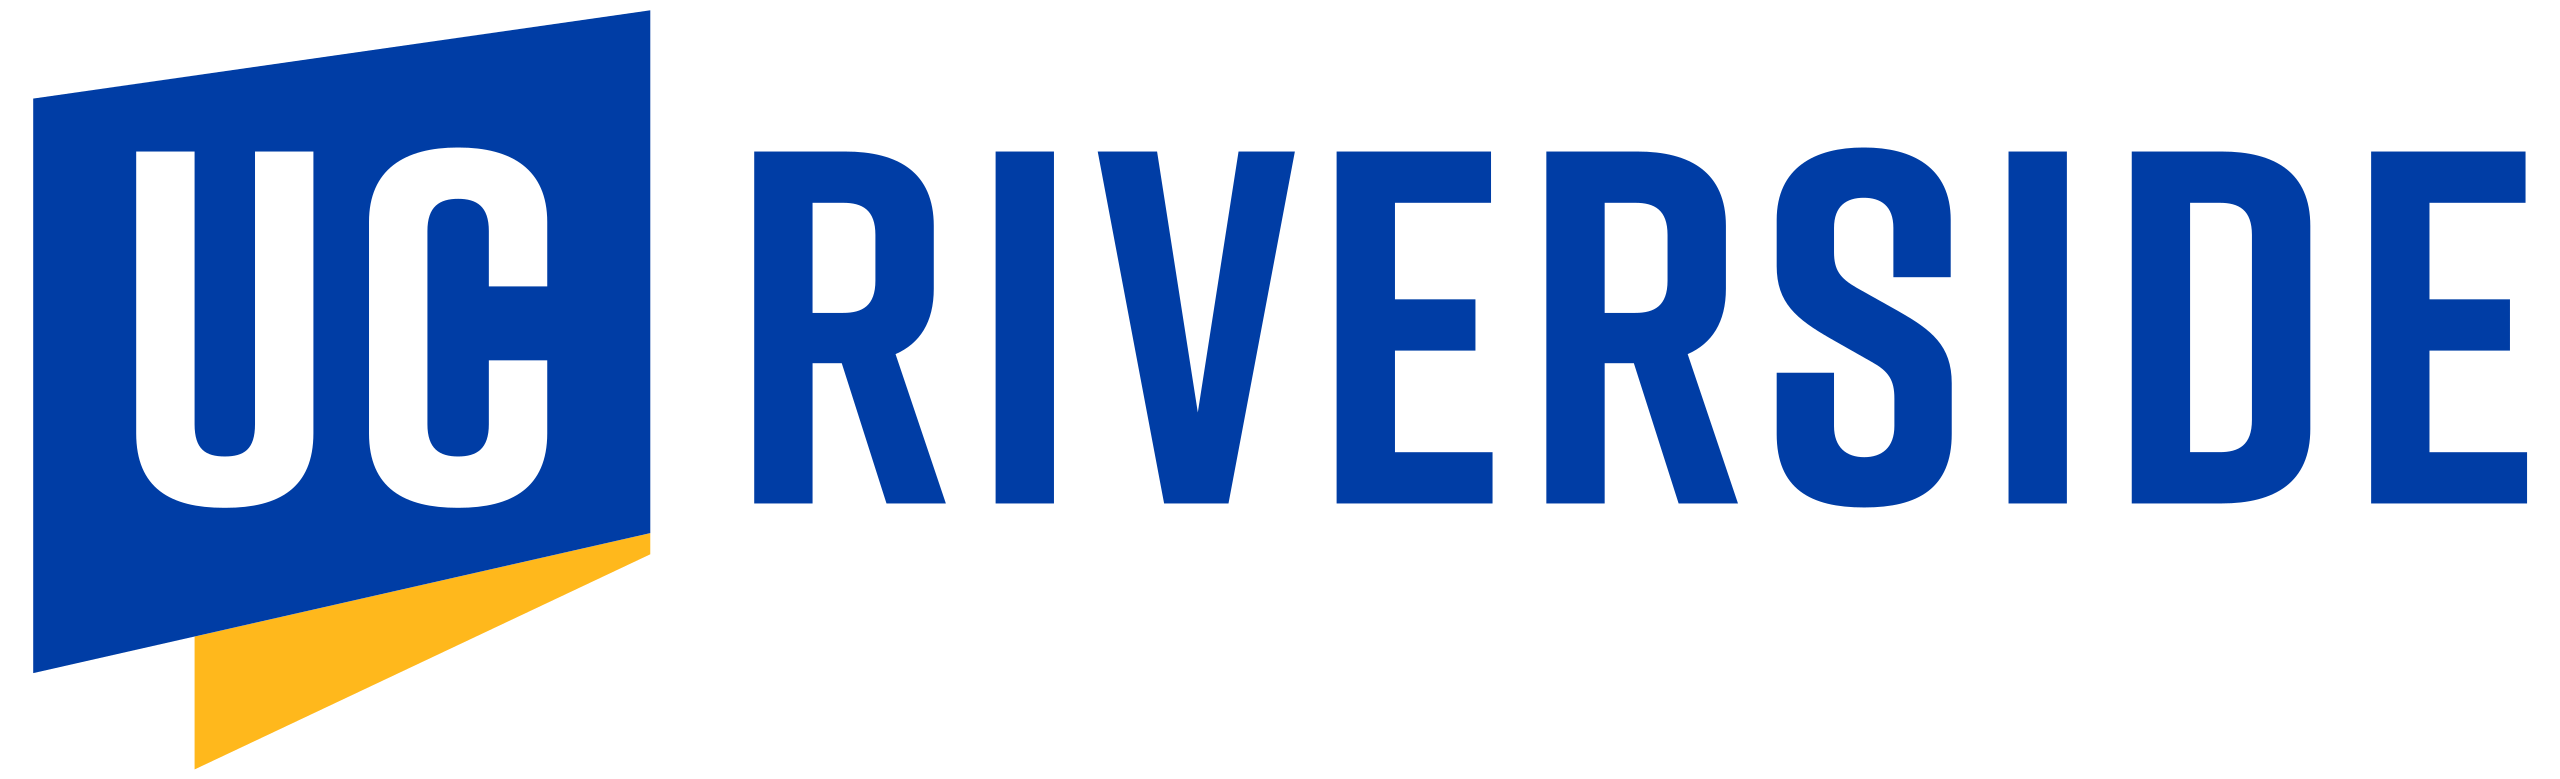 File:UC Riverside logo.svg - Wikipedia